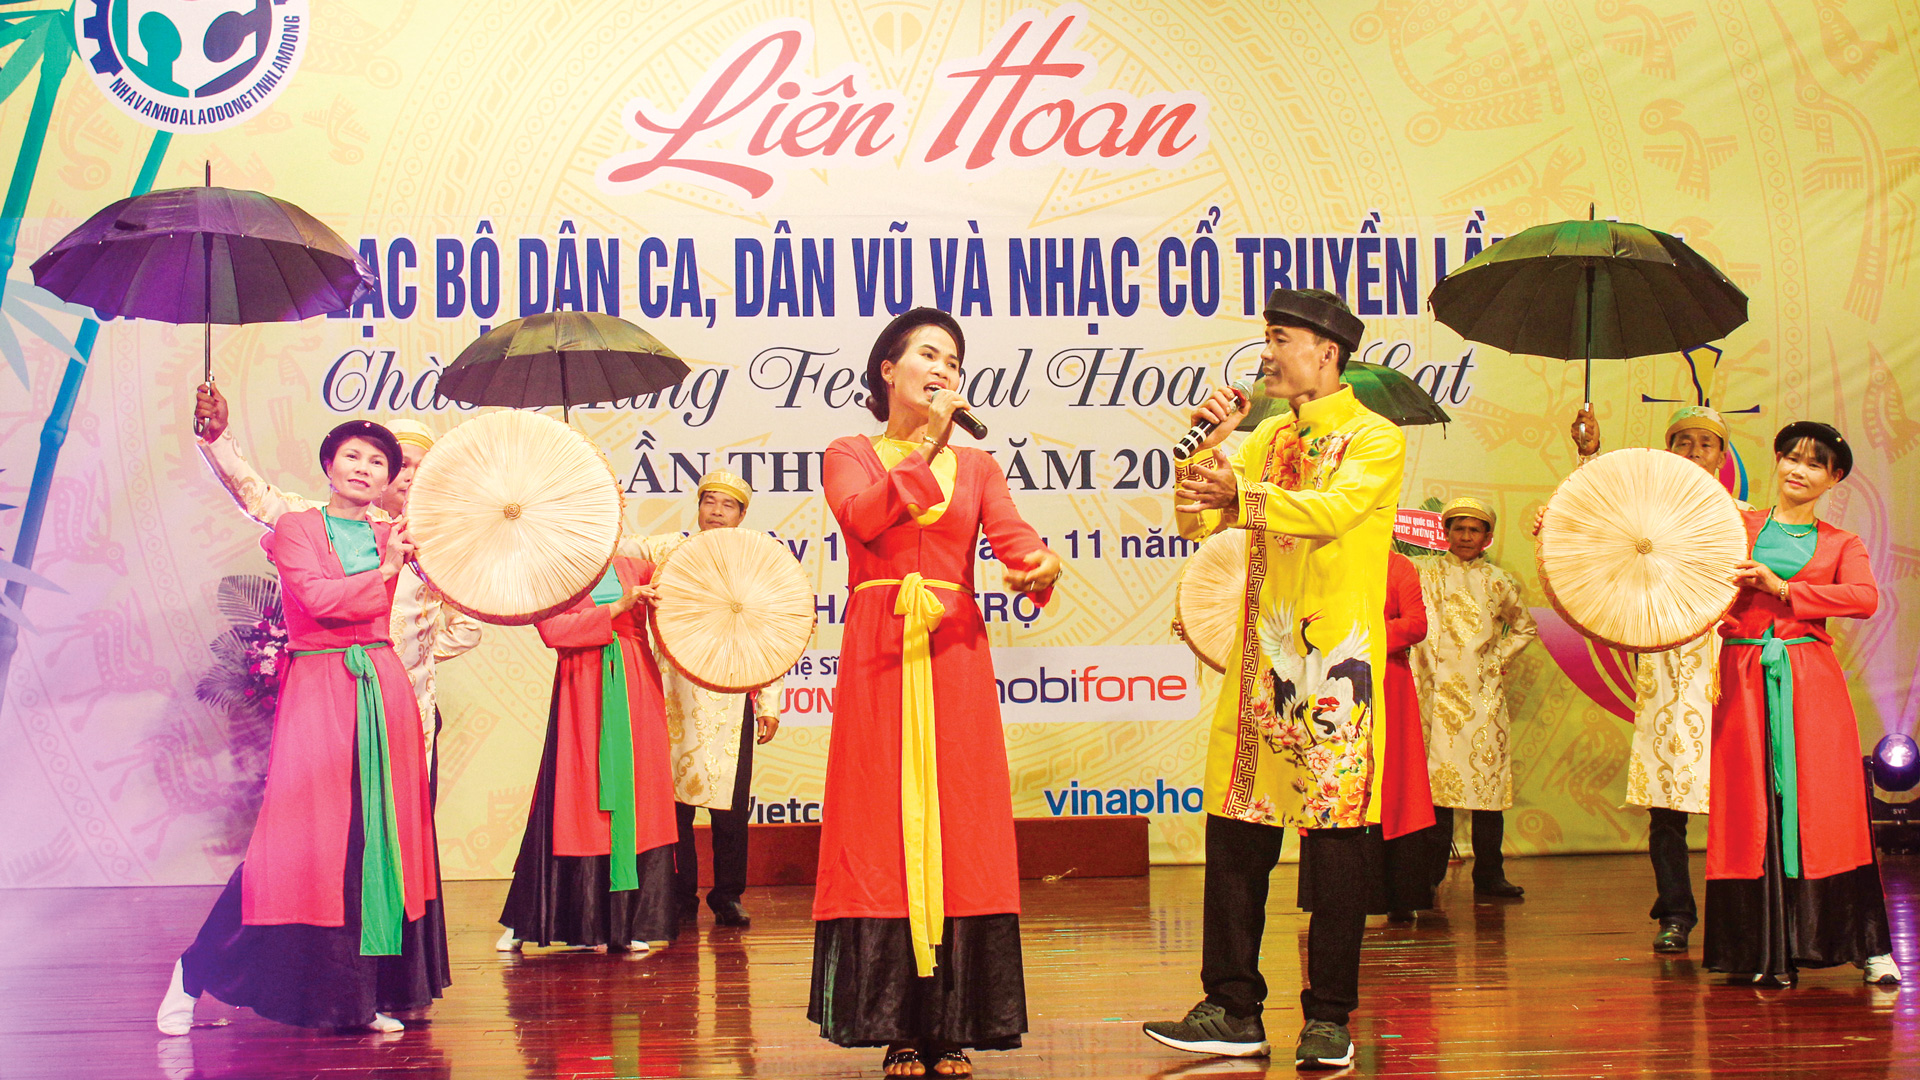 Các CLB văn hóa văn nghệ quần chúng huyện Lâm Hà biểu diễn trên sân khấu
liên hoan cấp huyện, cấp tỉnh